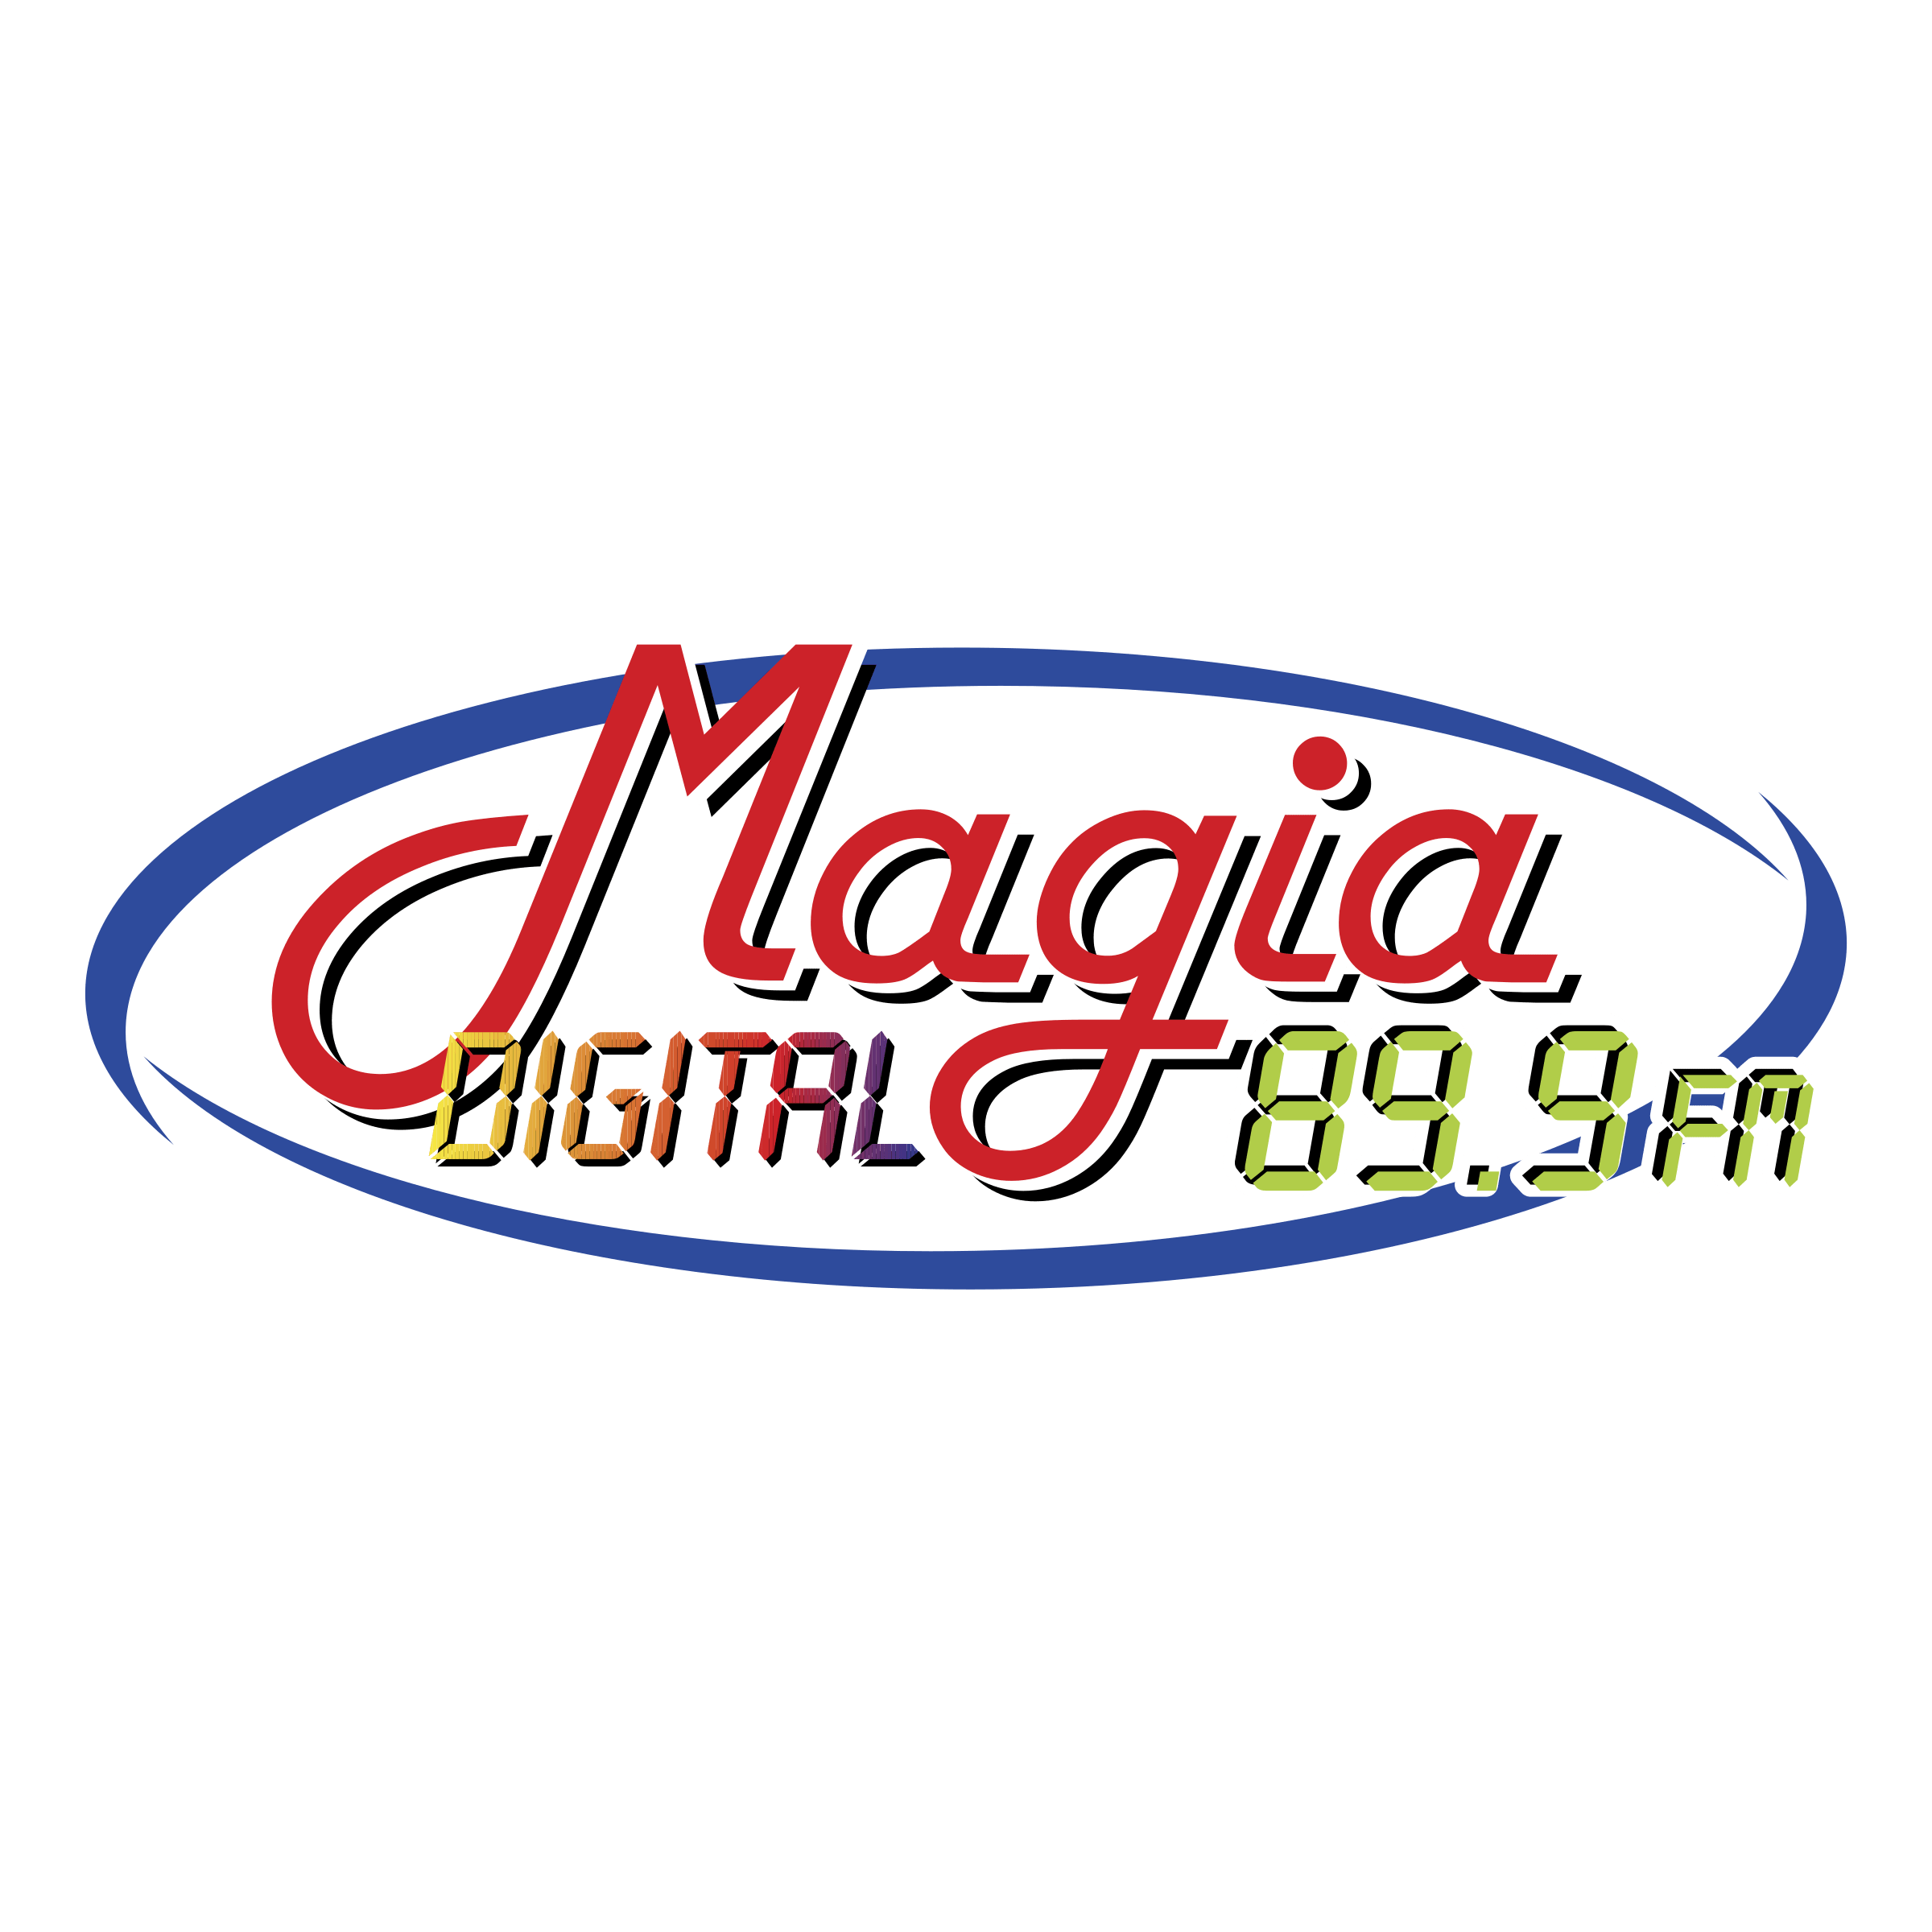 MoreMax Logo - Magia Digital Logo PNG Transparent & SVG Vector